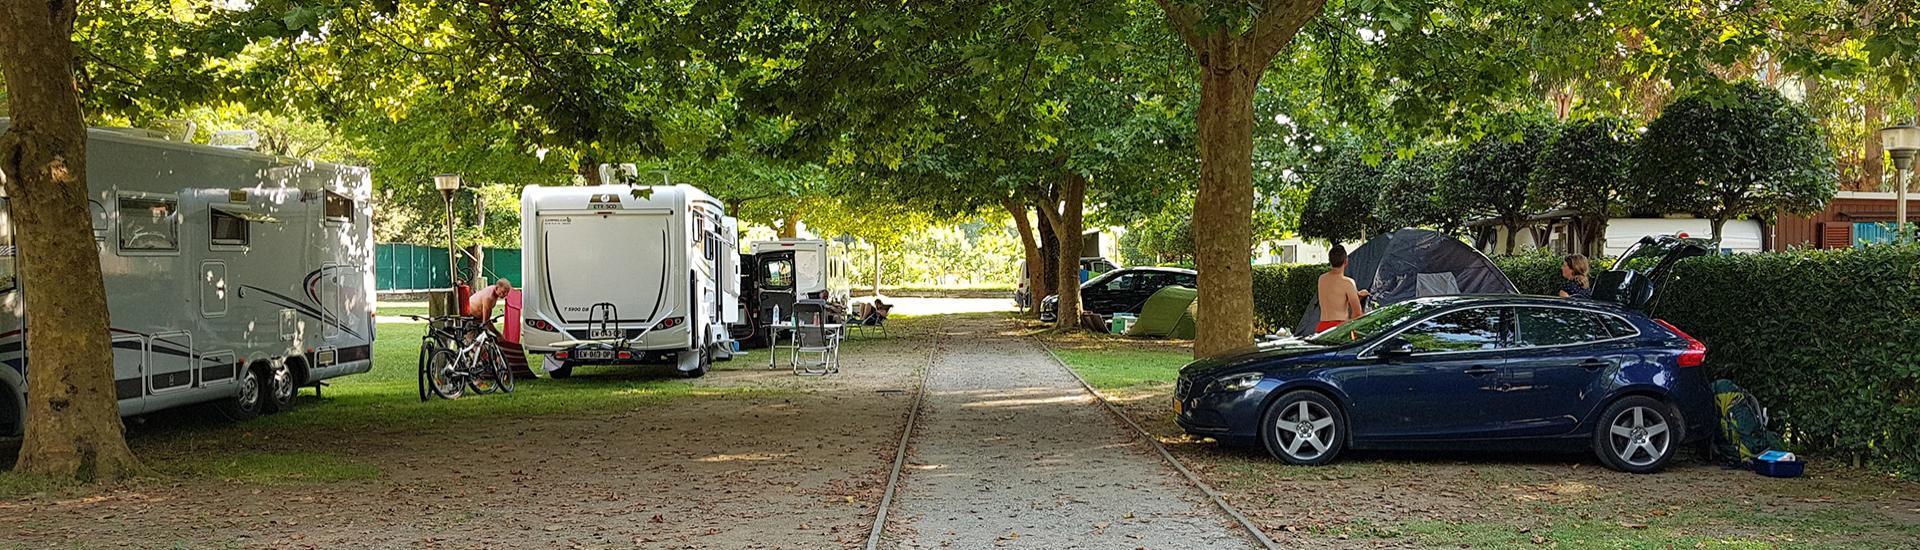 Camping mit Wohnmobilen, Autos und Zelten unter schattigen Bäumen.